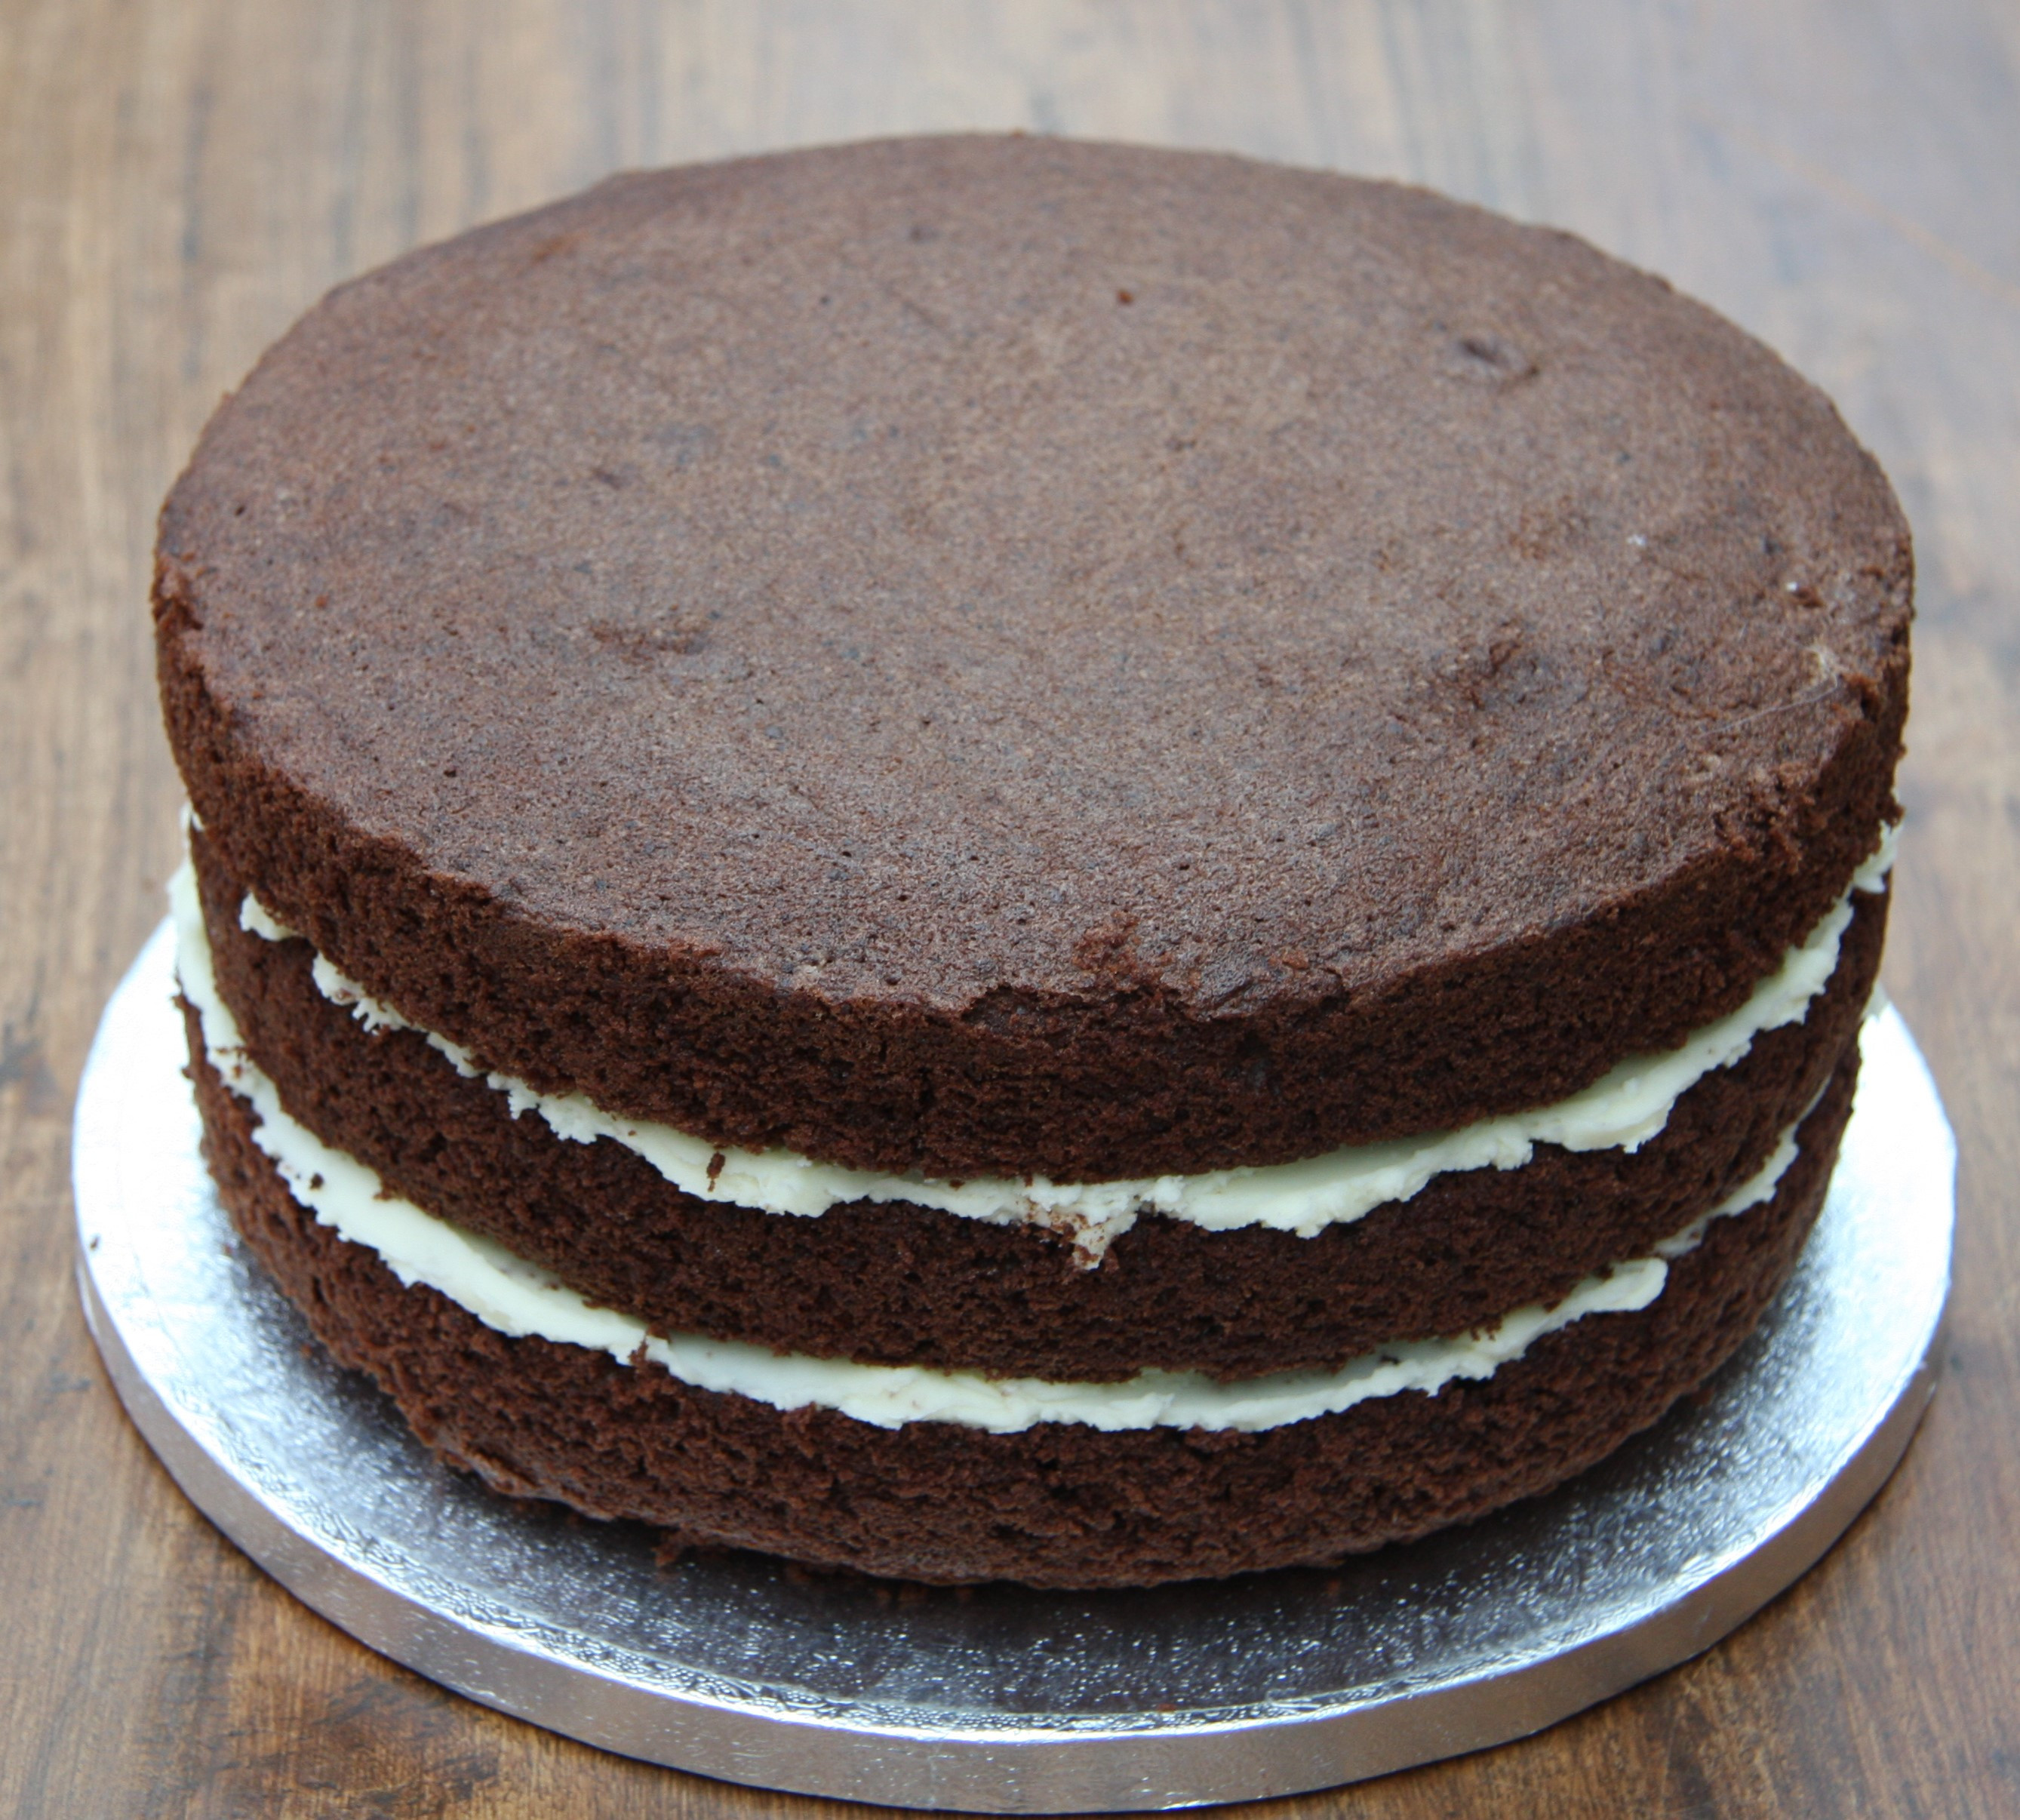 Best ideas about Birthday Cake Oreo
. Save or Pin Chocolate Oreo Birthday Cake – lovinghomemade Now.